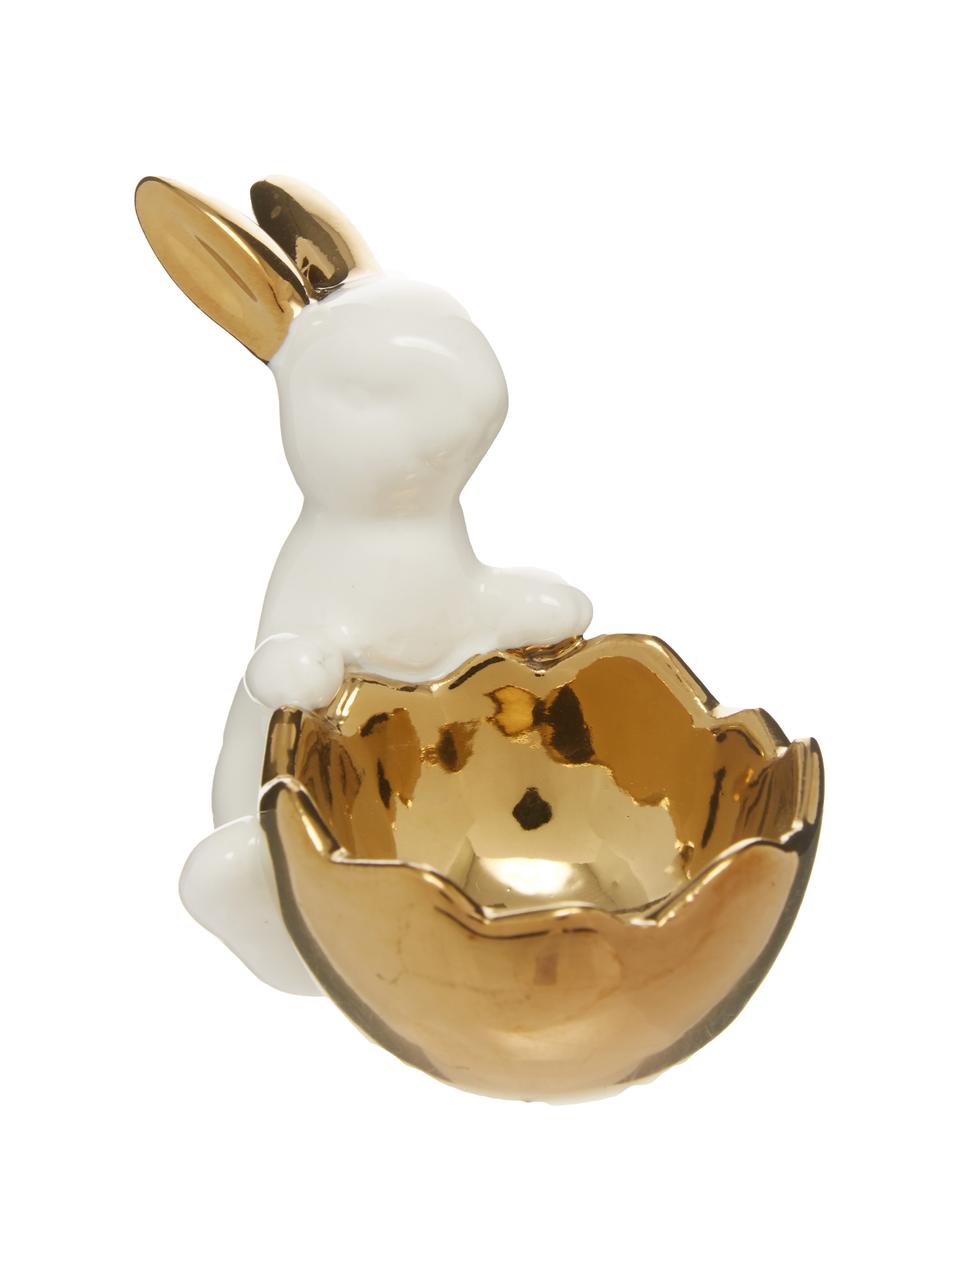 Súprava stojanov na vajíčka Bunny, 2 diely, Porcelán, Biela, odtiene zlatej, Súprava s rôznymi veľkosťami